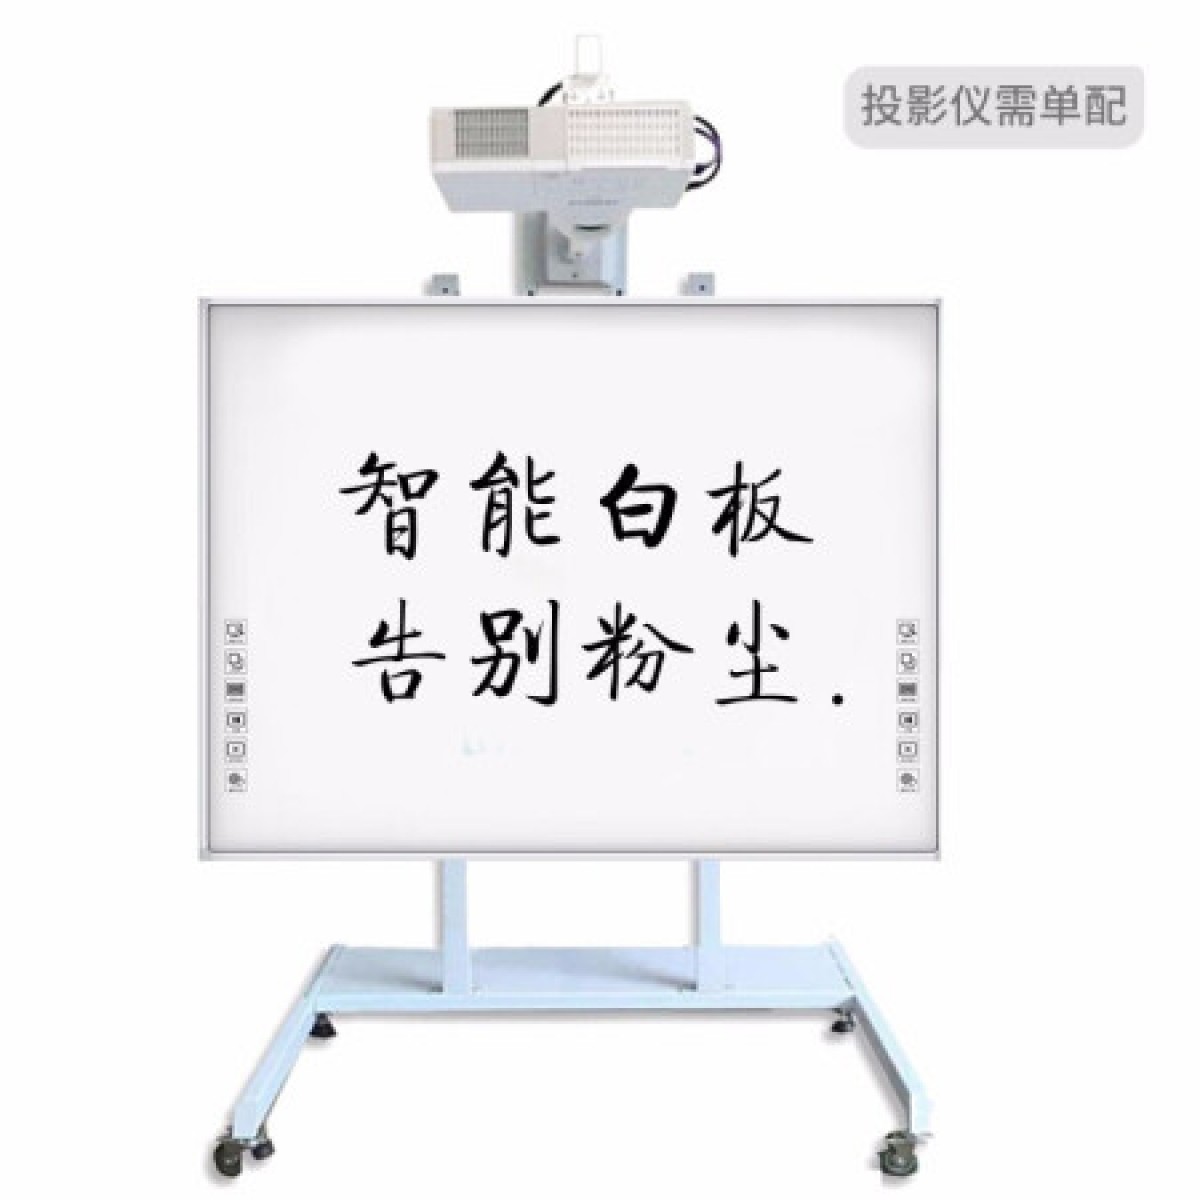 鸿合(HiteVision)83英寸电子白板智能会议红外交互式黑板教学一体机触摸屏互动平板手写 HV-I683